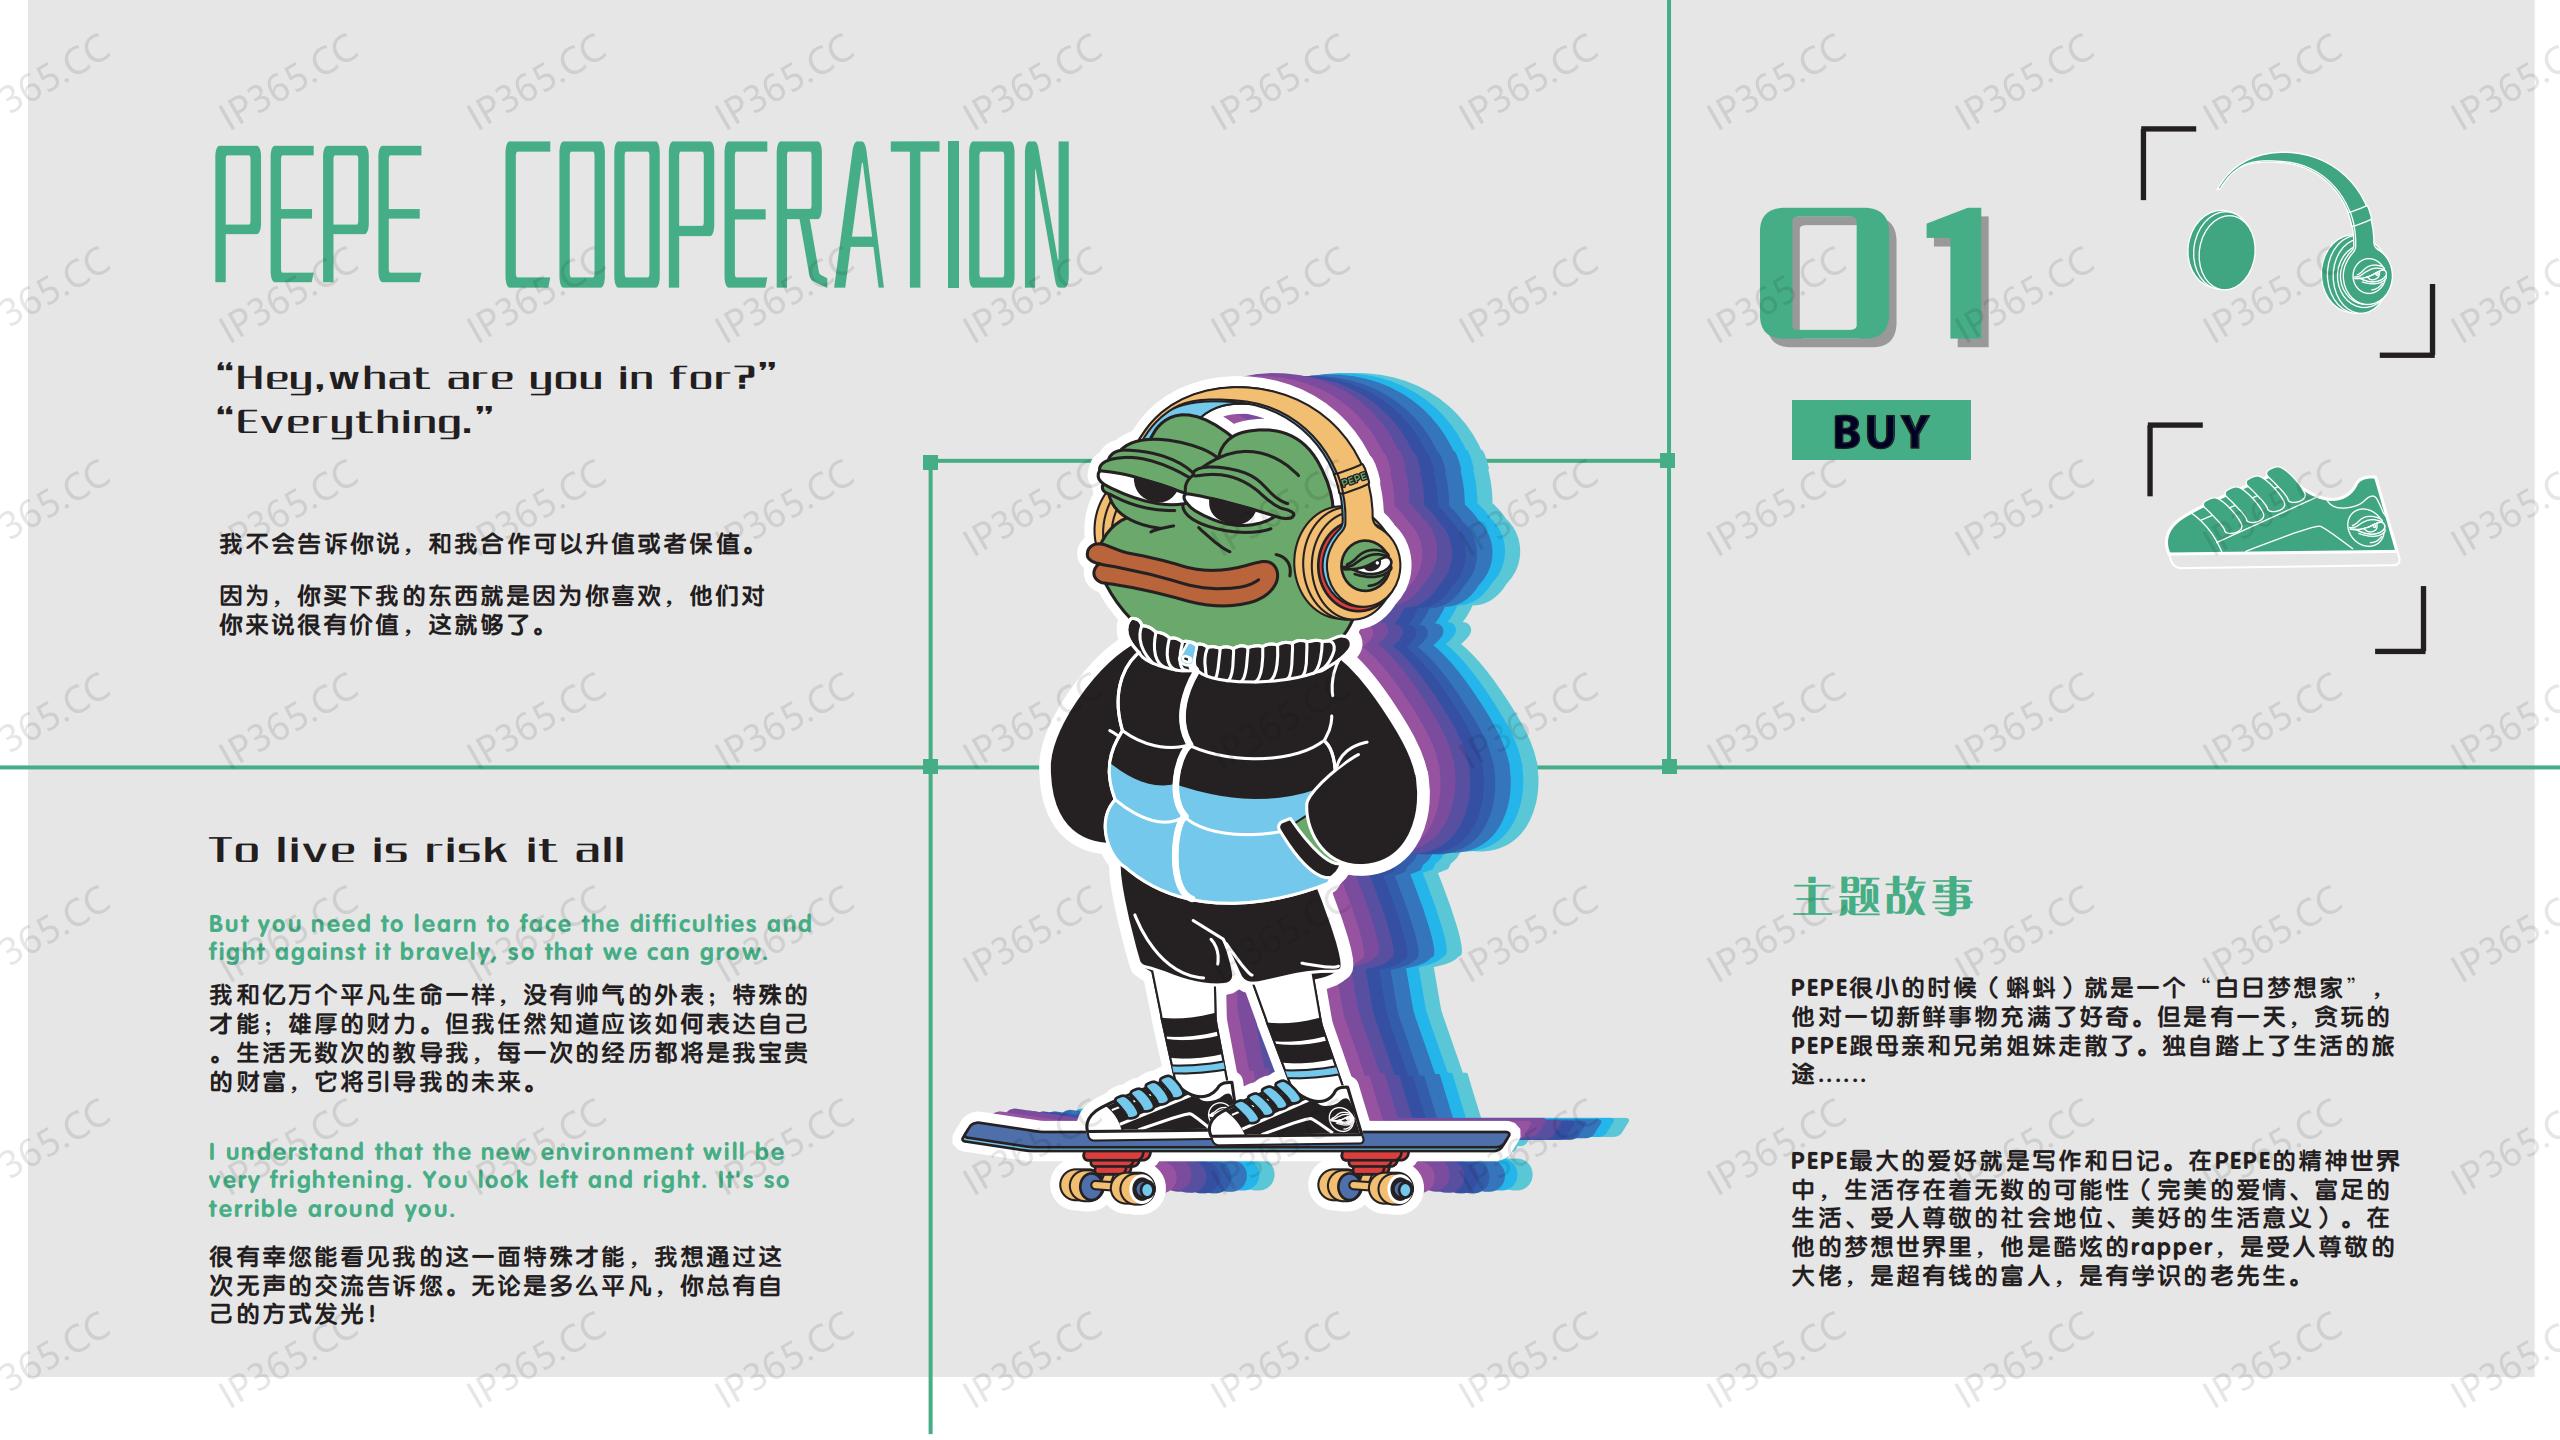 悲伤蛙PEPE 2020合作宣传手册_02.jpg